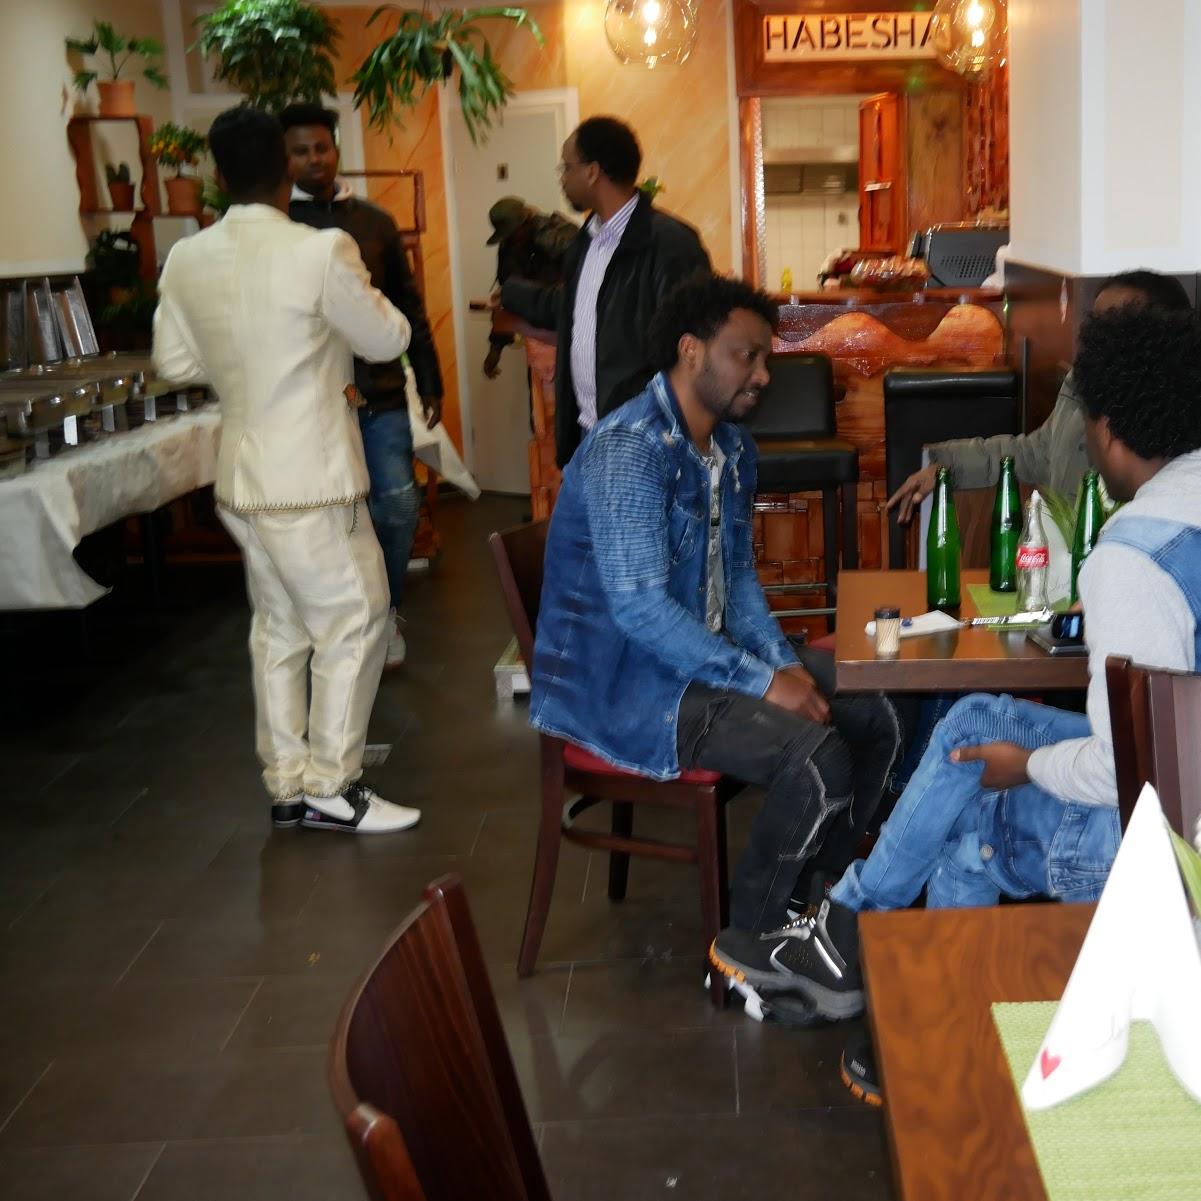 Restaurant "Eritreisches und Äthiopisches Restaurant" in Dortmund